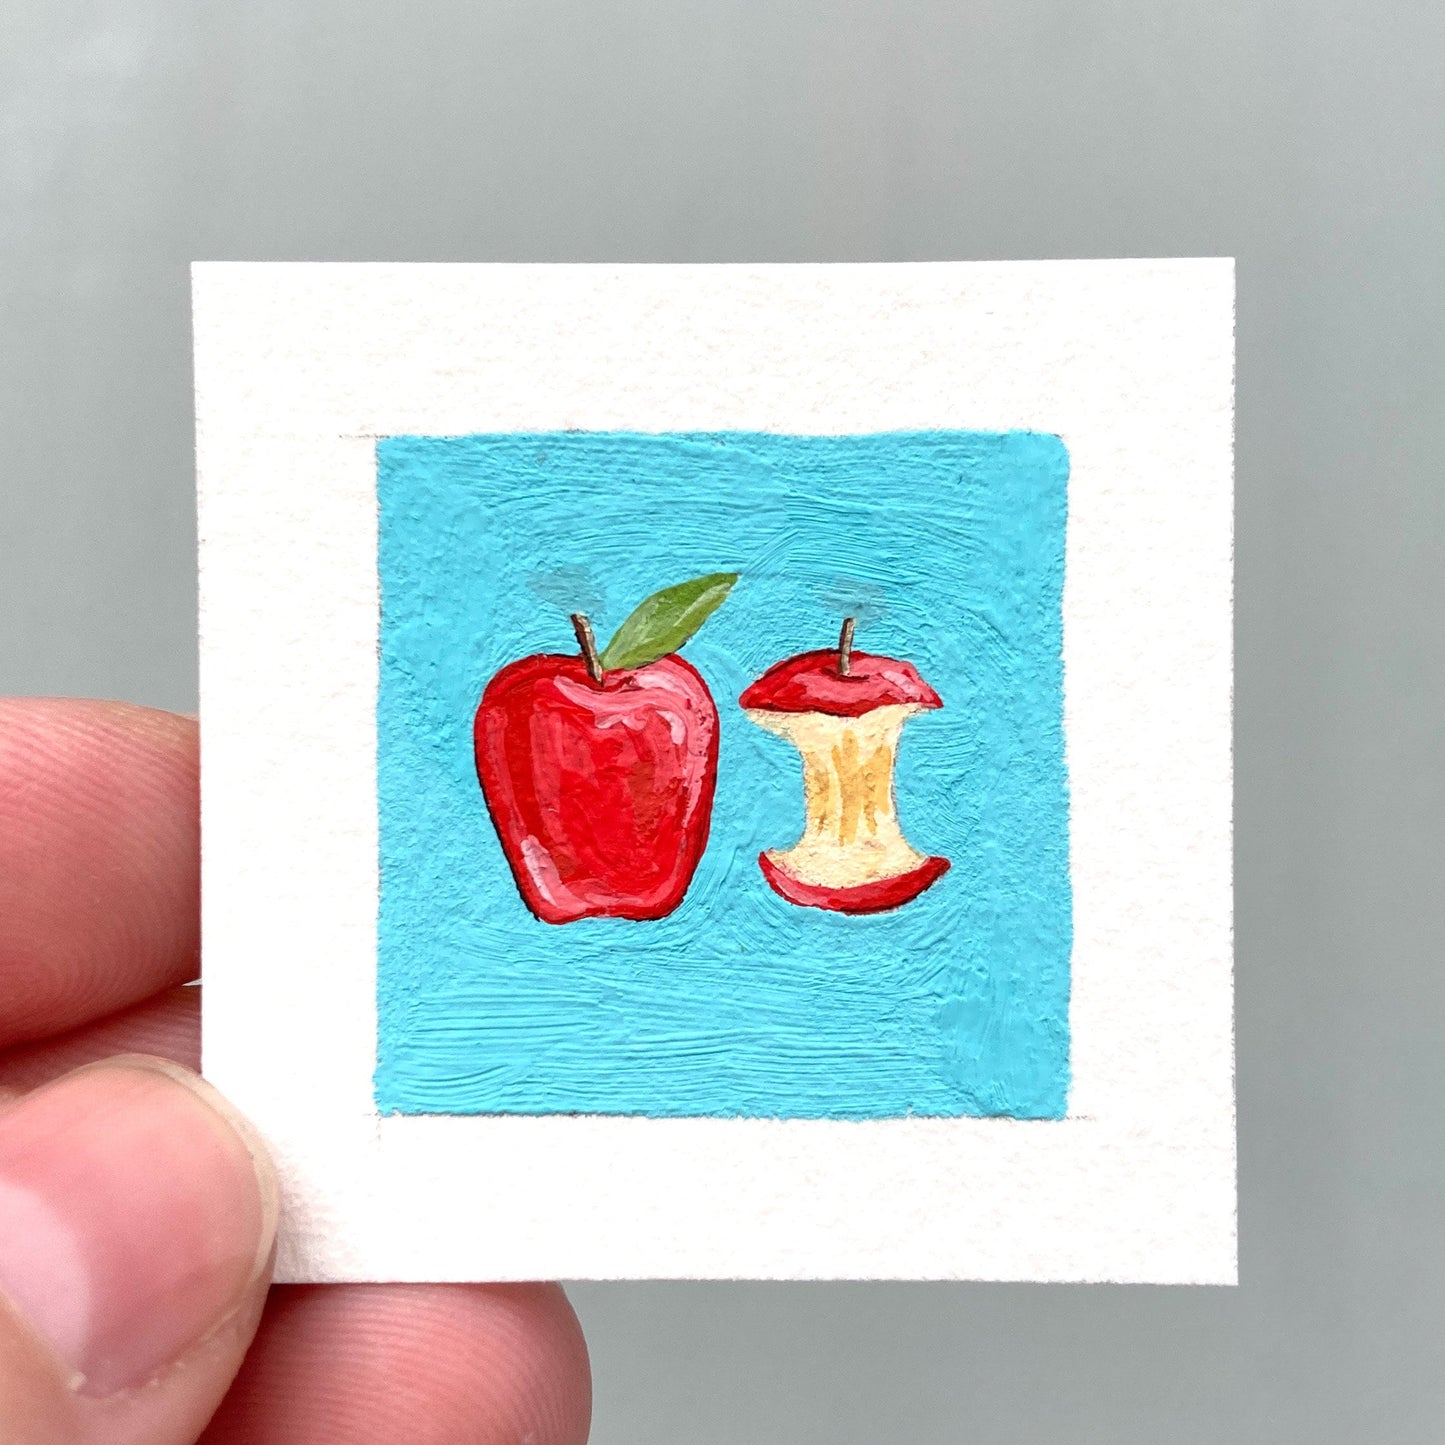 ORIGINAL Mini 1" Apple Gouache Original Painting